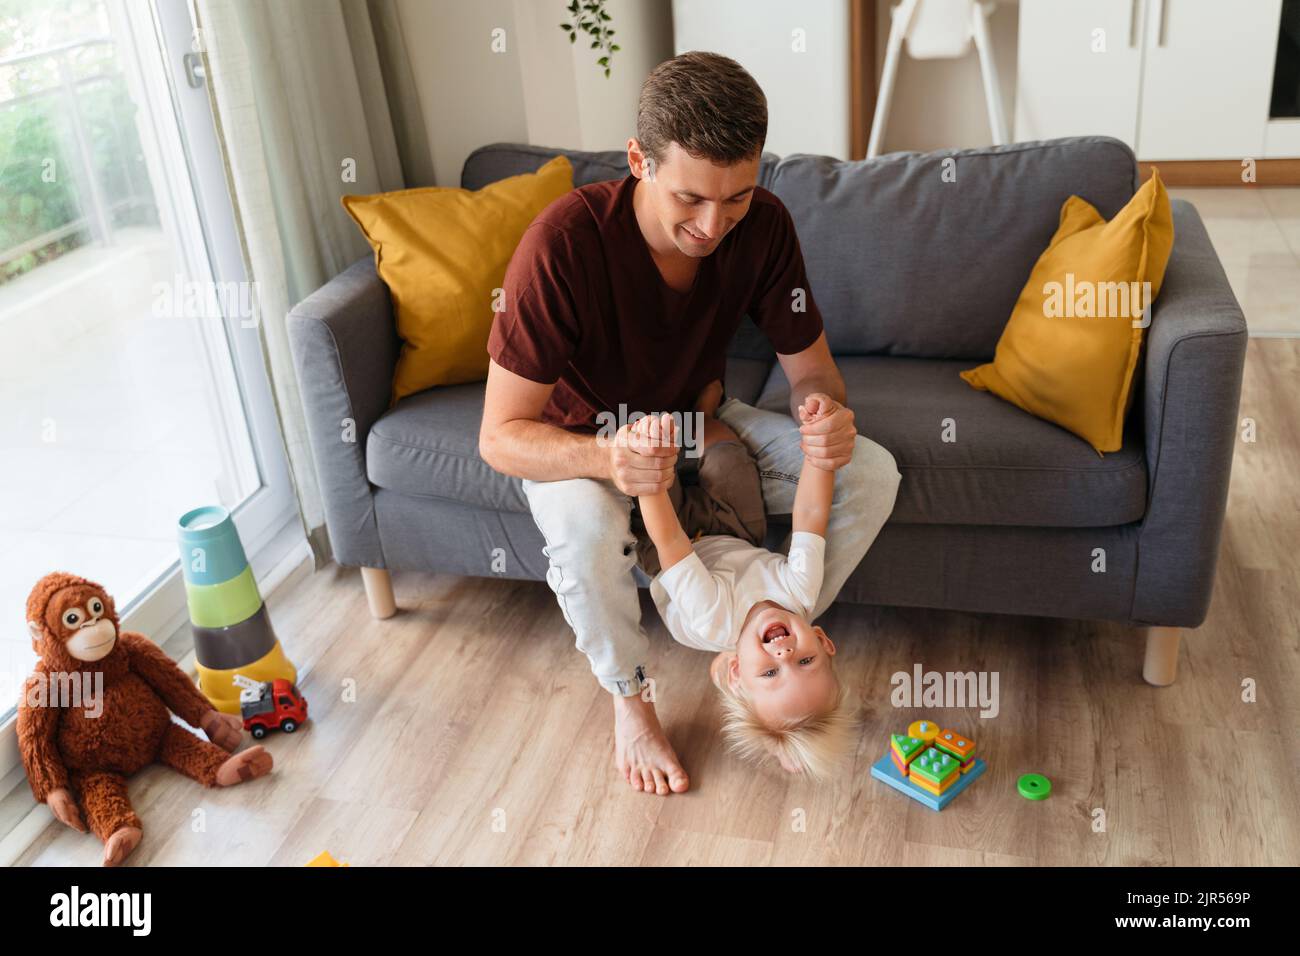 Der junge Vater spielt in aktiven Spielen mit seinem kleinen Jungen, der seine Hände auf dem Sofa im Wohnzimmer zieht, das von Spielzeug auf dem Boden umgeben ist. Glückliche, sorglose Kindheit. Vater-Sohn-Beziehungen, Vaterschaft Stockfoto